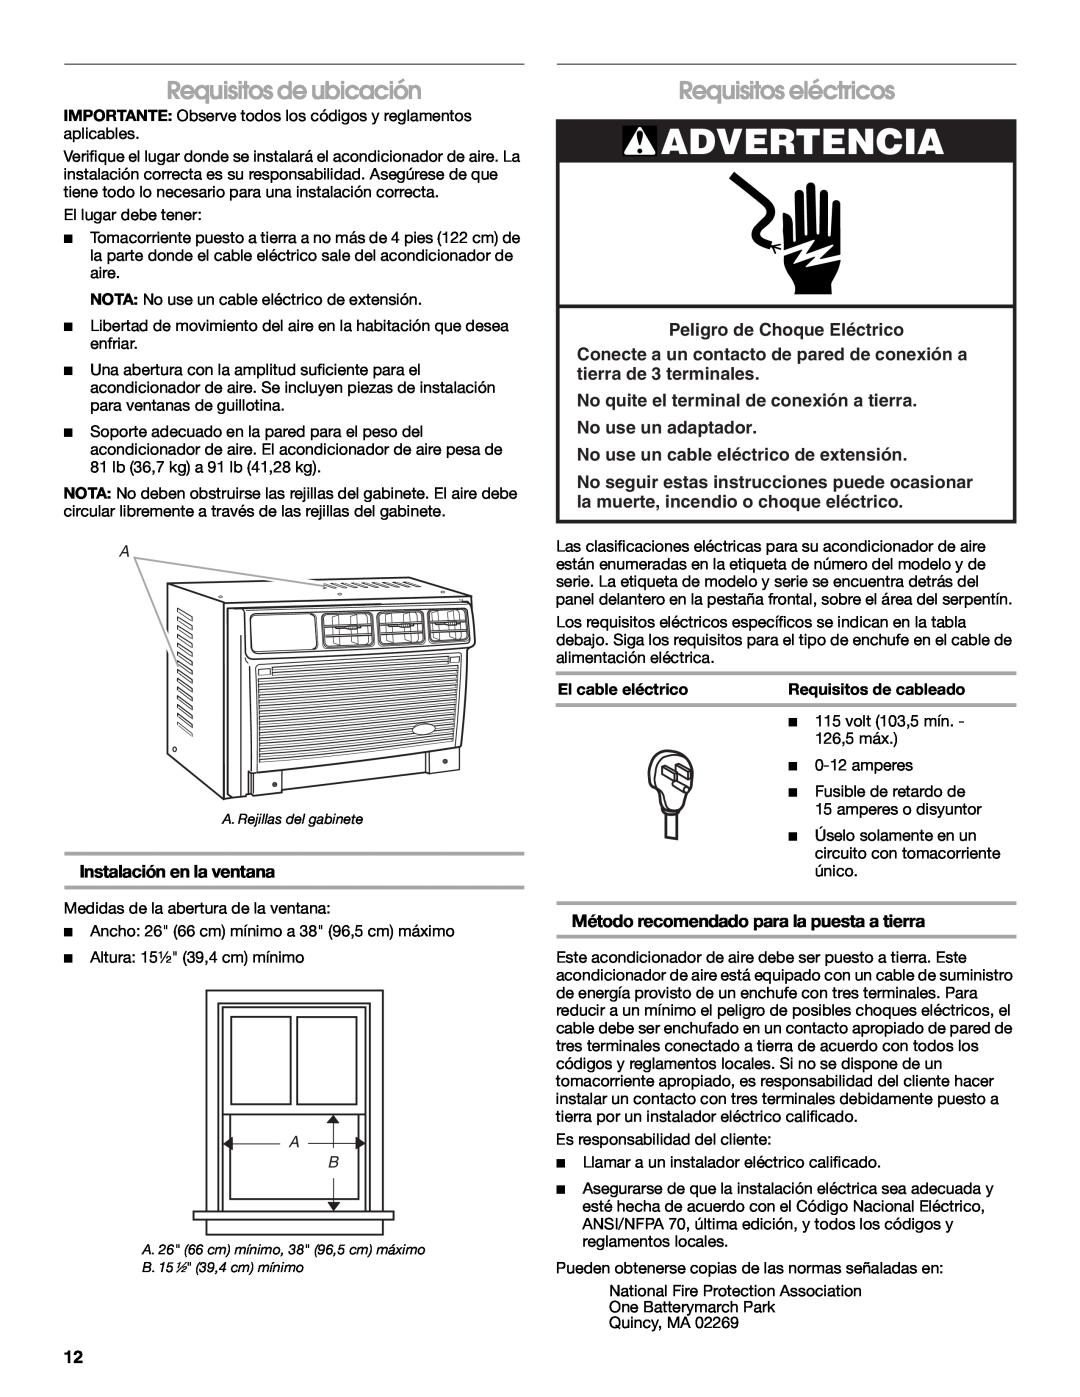 Whirlpool ACM122XR0 manual Advertencia, Requisitos de ubicación, Requisitos eléctricos, Instalación en la ventana 